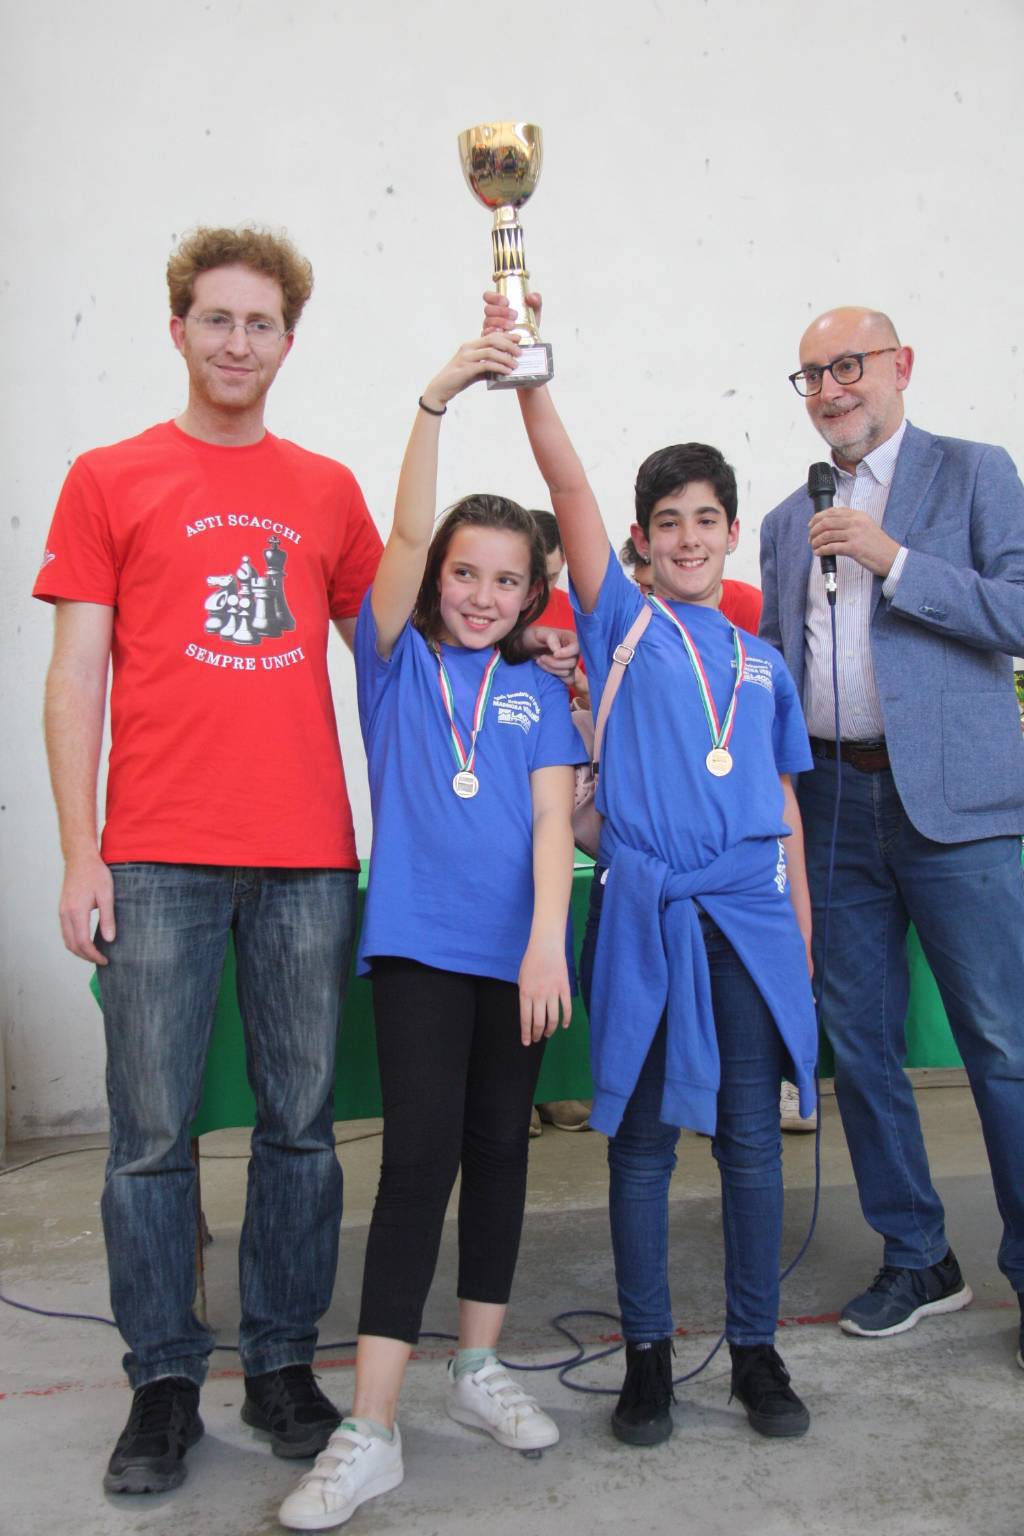 Campionati Studenteschi di Scacchi 2018/19 Asti